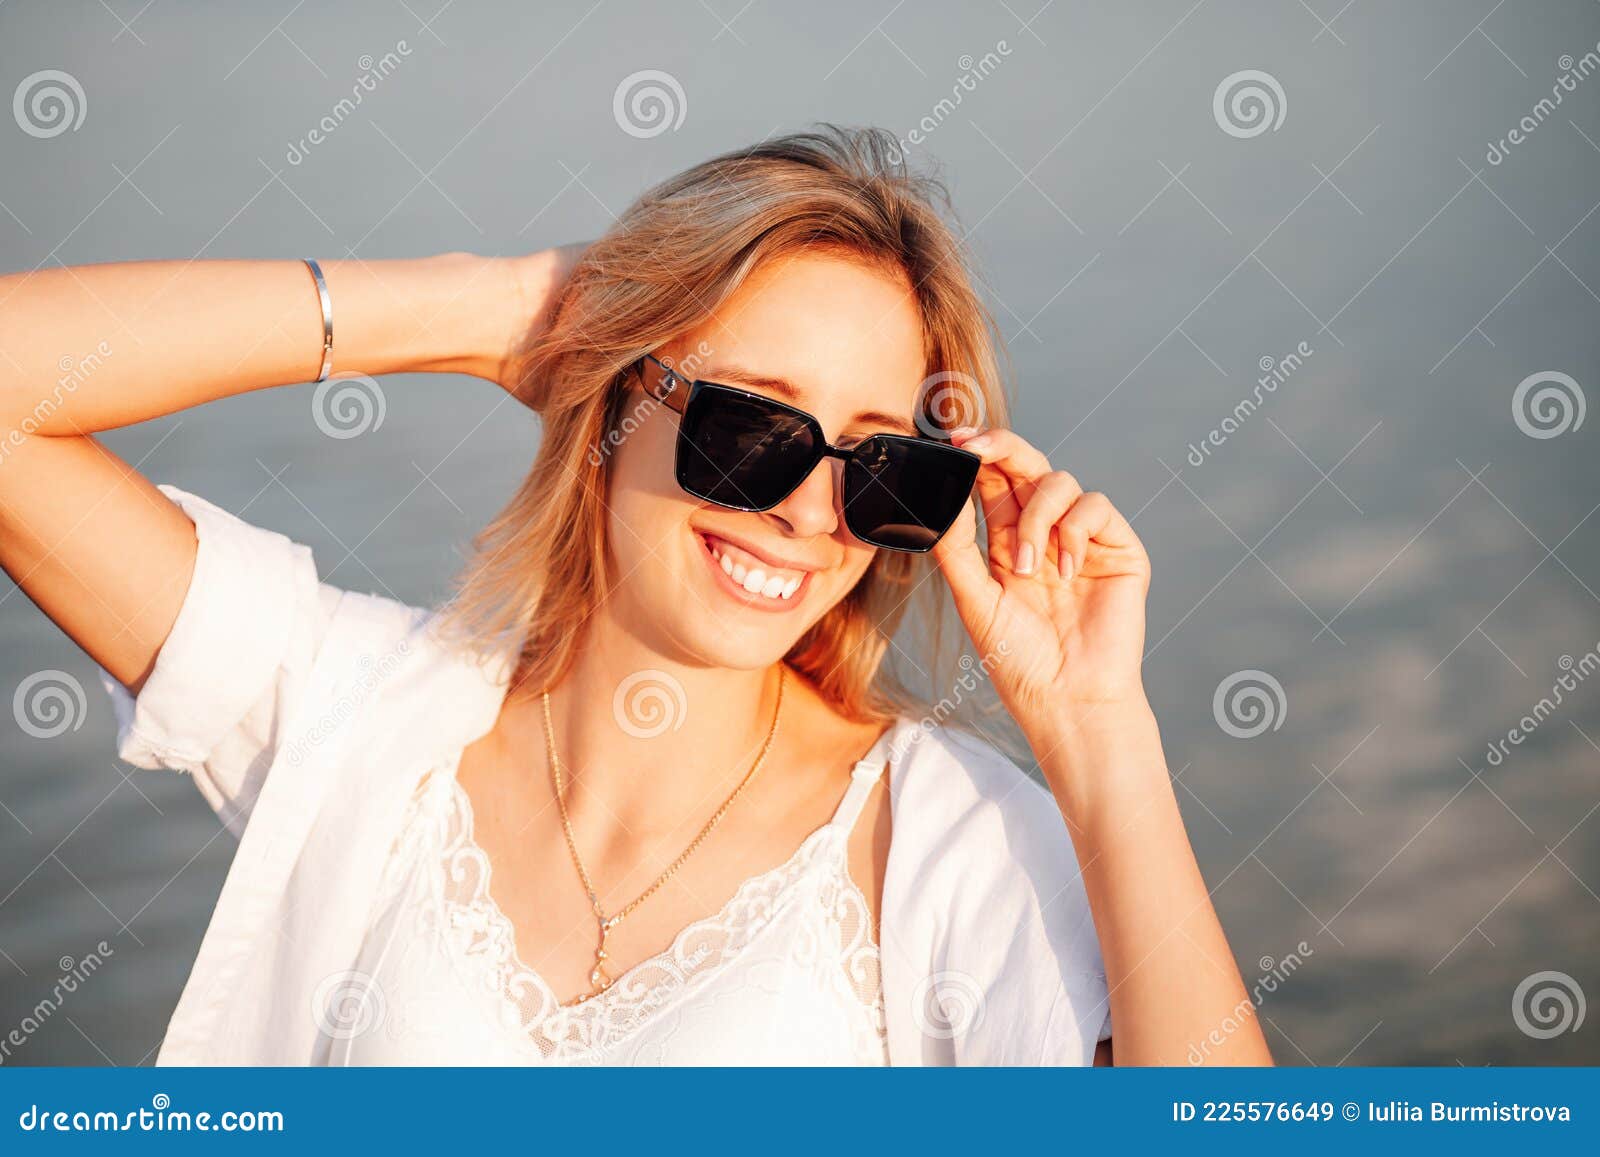 Immagini Stock - Una Donna Con Un Vestito Arancione E Occhiali Da